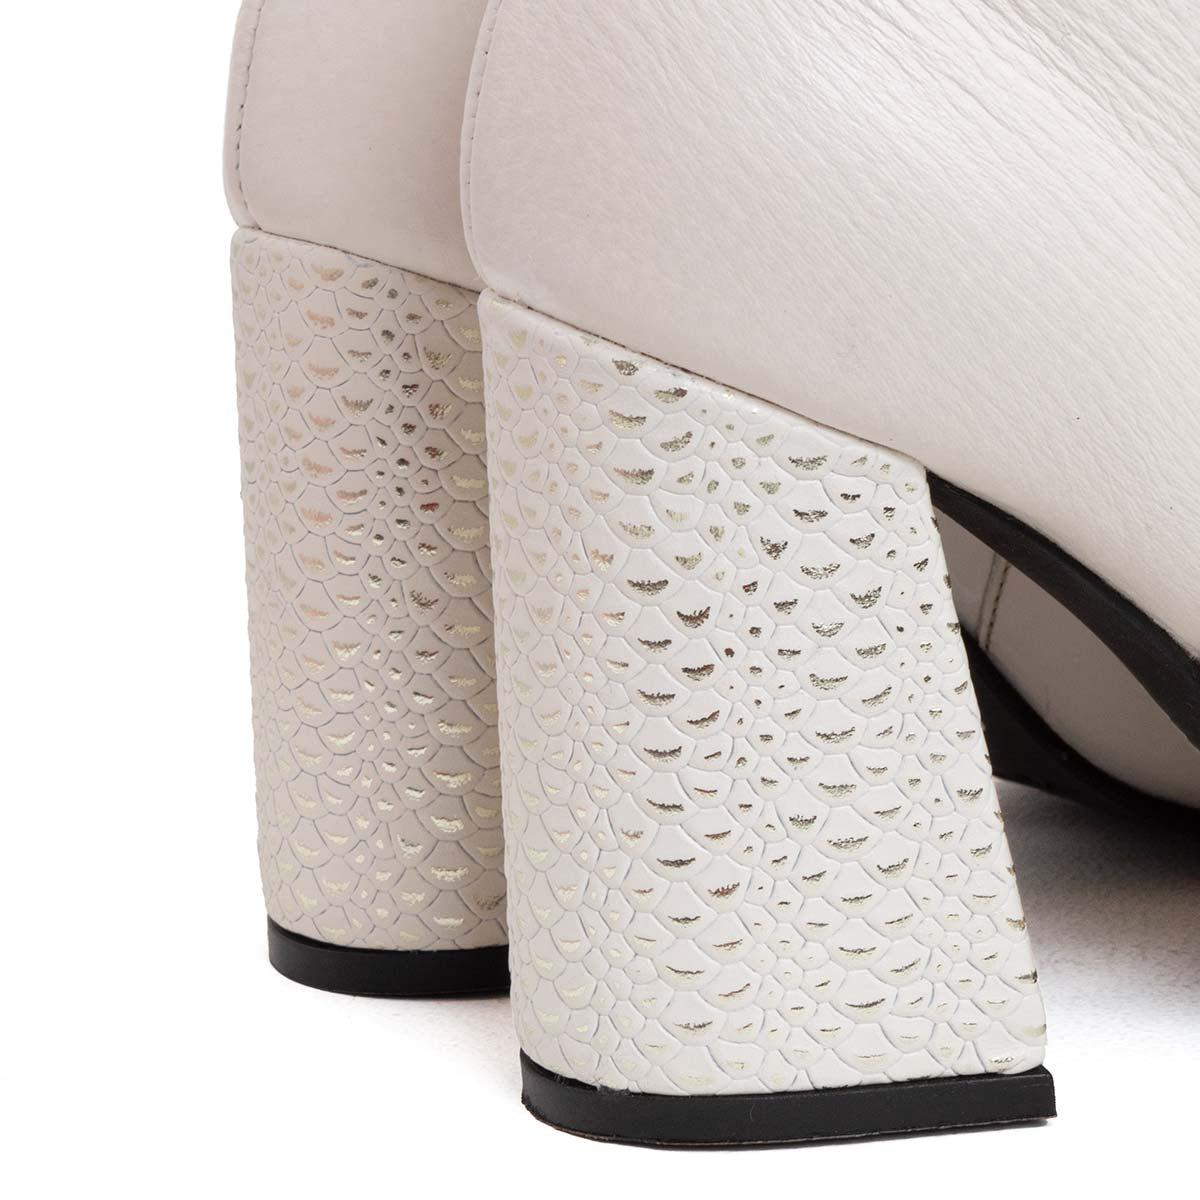 Botines de cuero color blanco con texturizado metálico en tacón